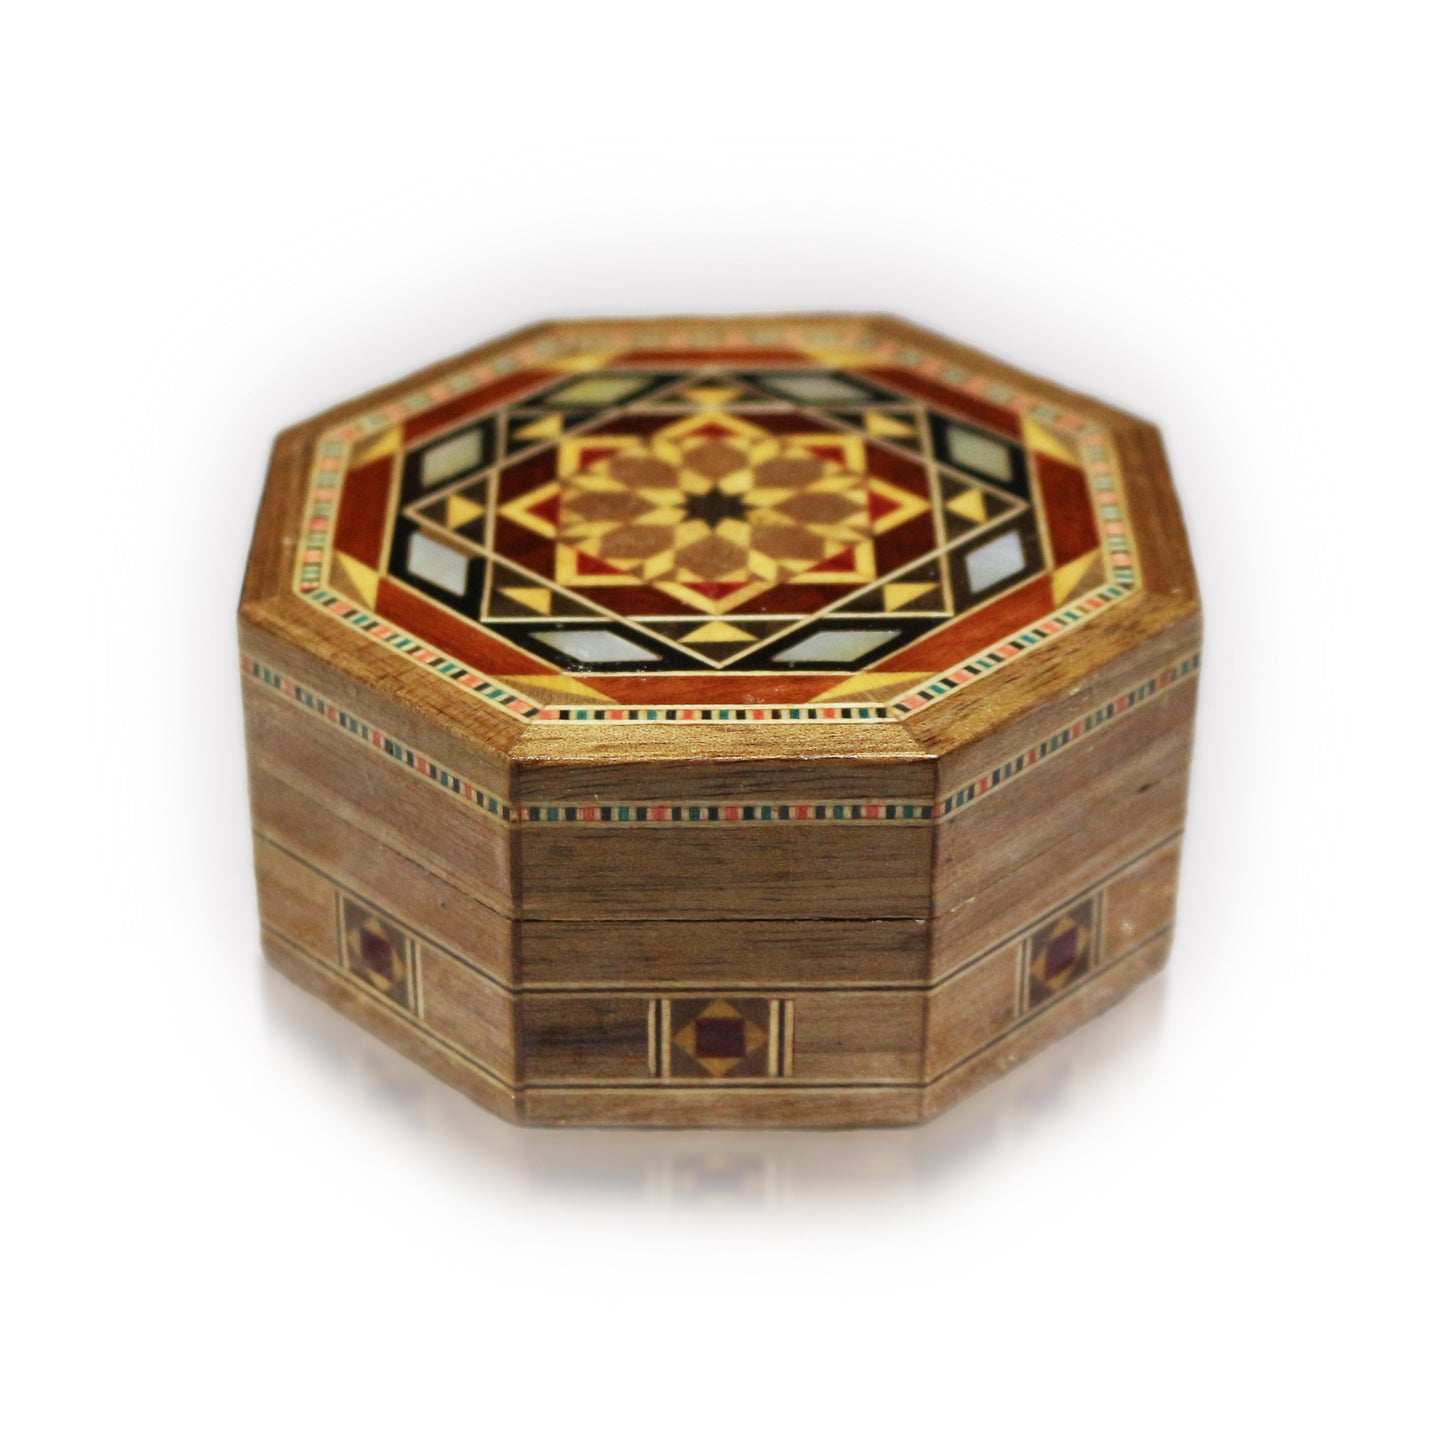 Neu Holz Mosaik Schatulle,Box,Kästchen, Damaskunst K 1-1-81 - Damaskunst - [variant_title]-[option1]